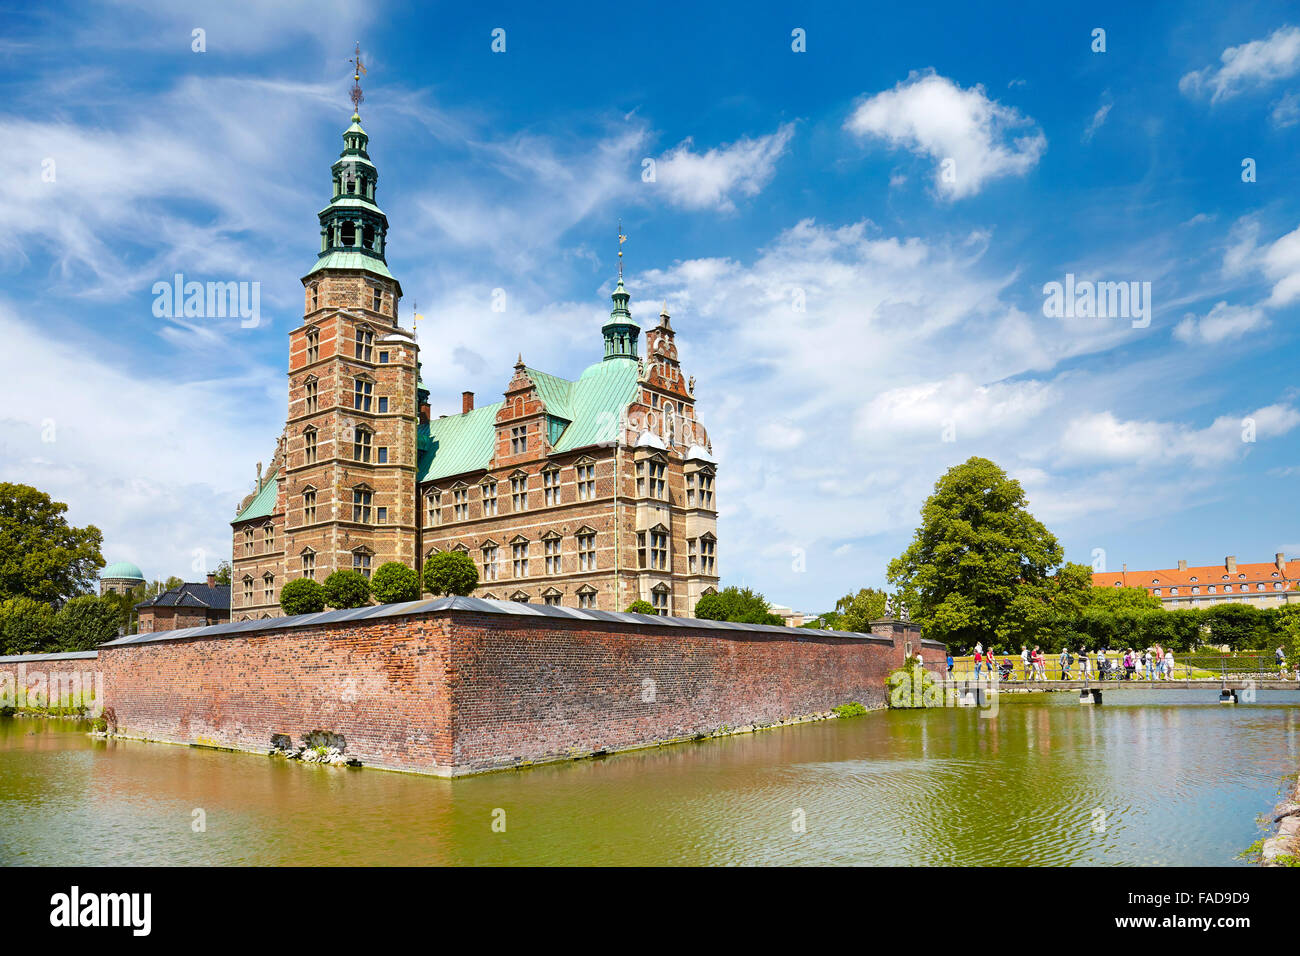 Rosenborg Castle, Copenhagen, Denmark Stock Photo